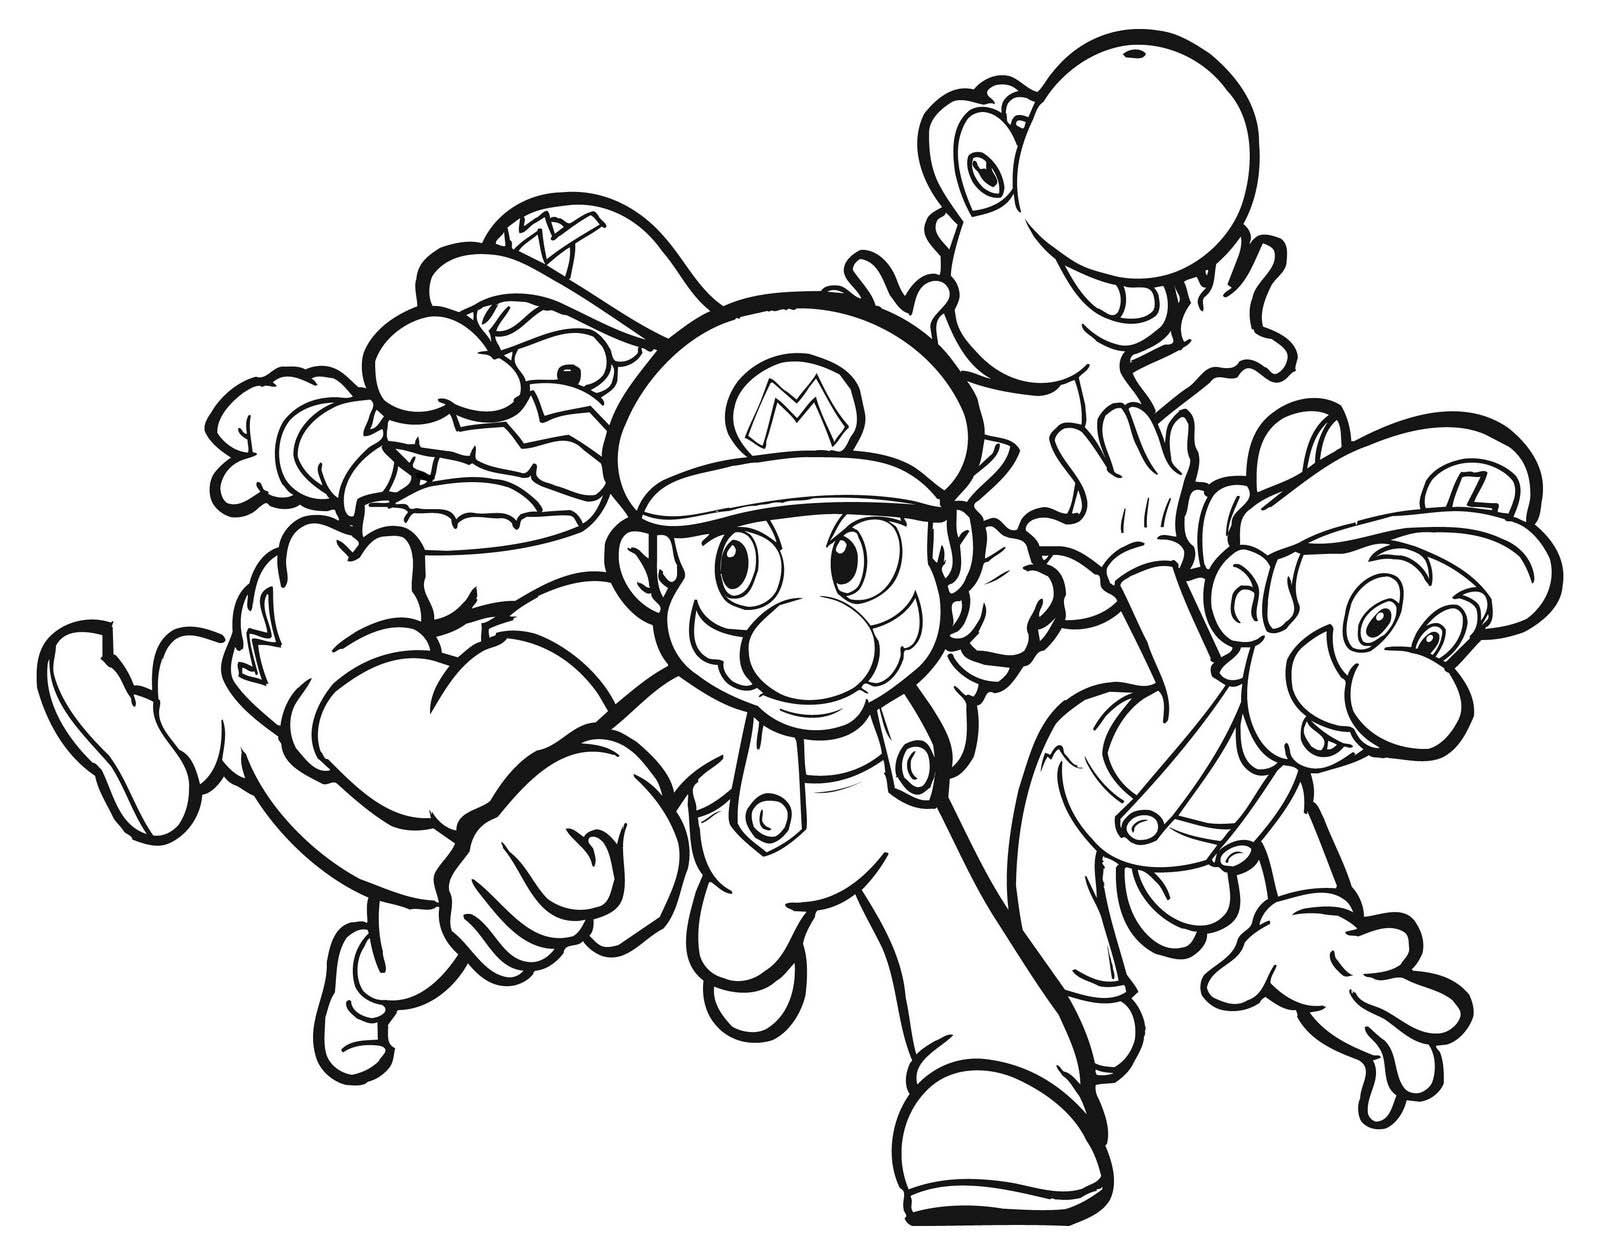 Group Mario coloring pages | Mario Bros games | Mario Bros ...